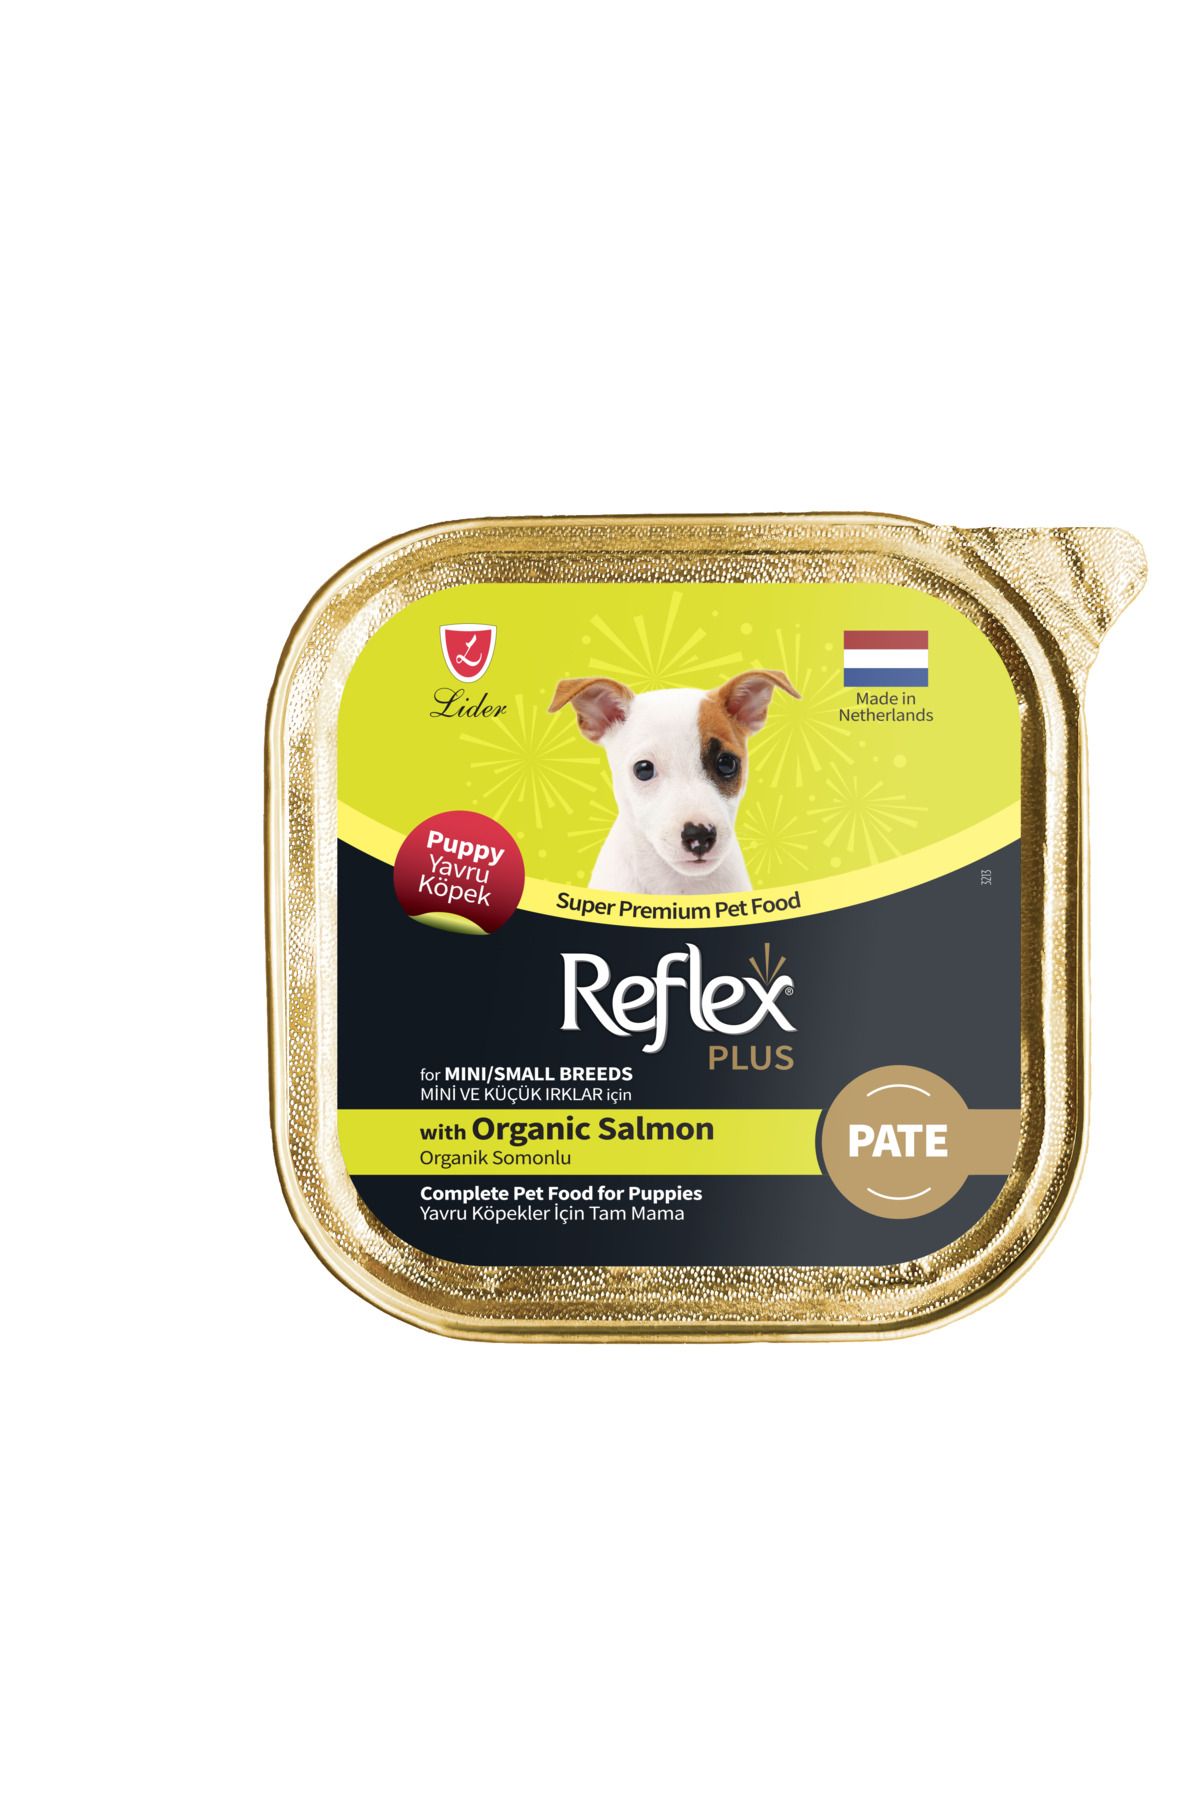 Reflex Plus Alu Tray 85 gr Organik Somonlu Pate Kıyılmış Küçük ırk Yavru köpek için Yaş mama